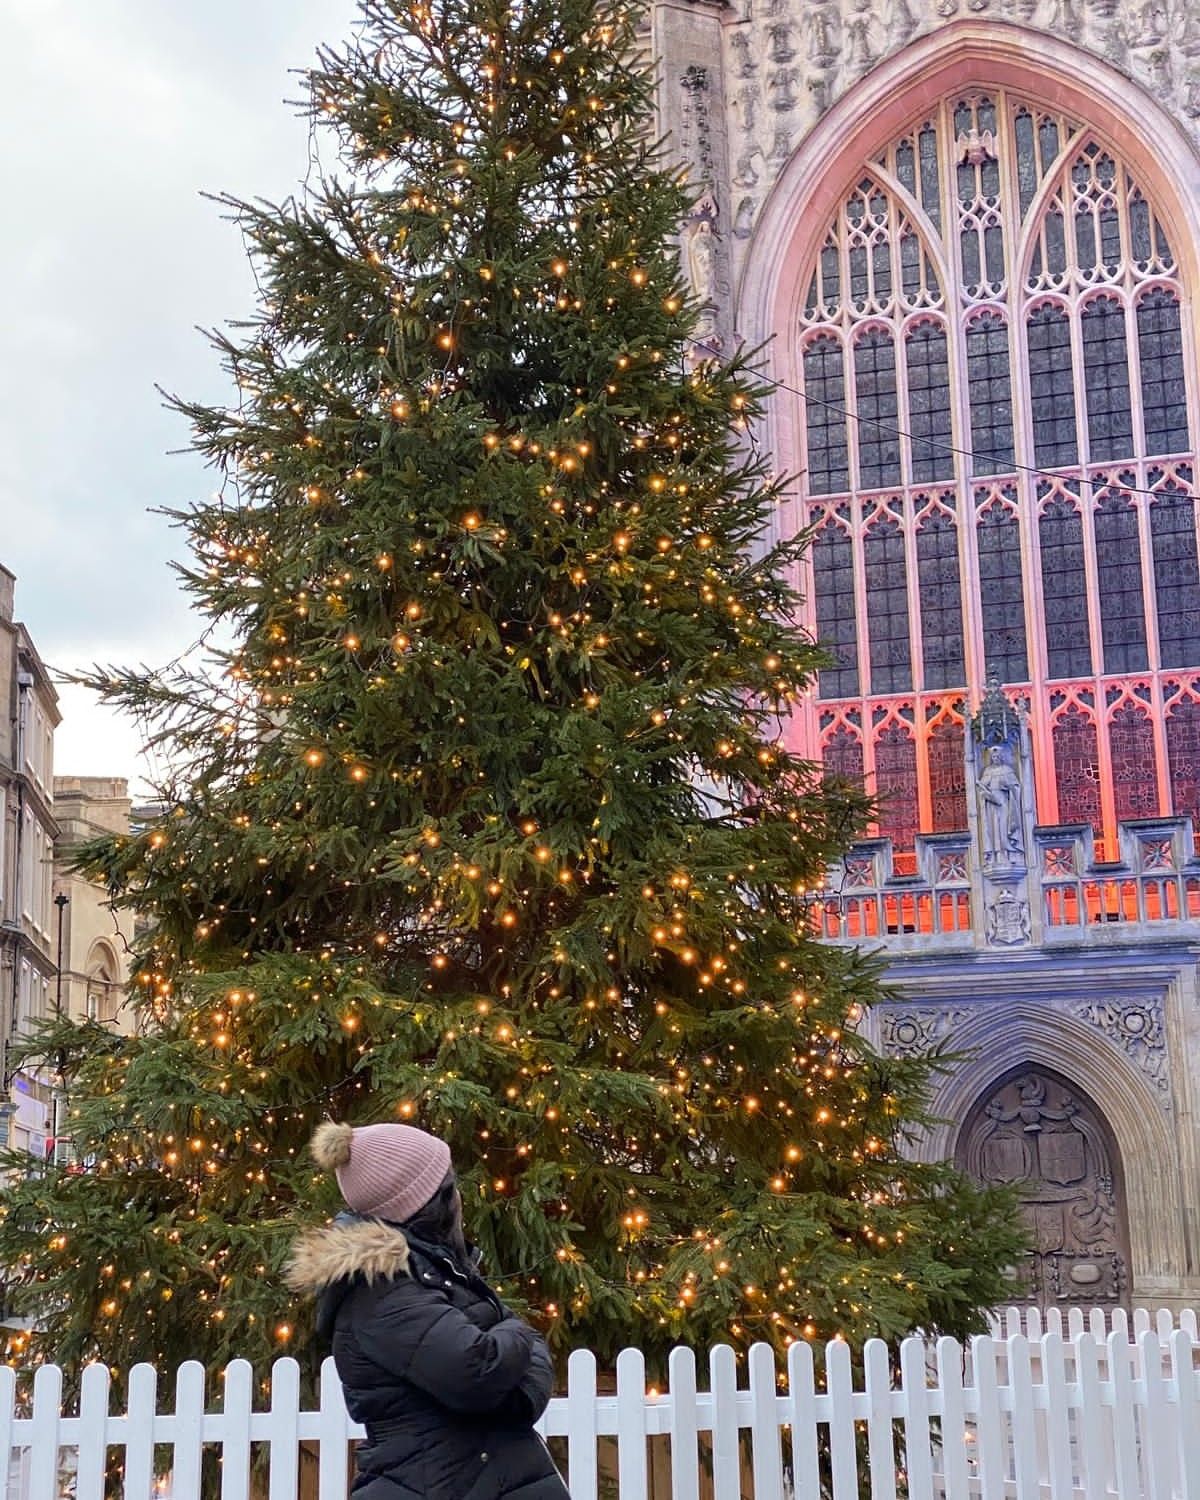 A Christmas tree outside Bath Abbey.